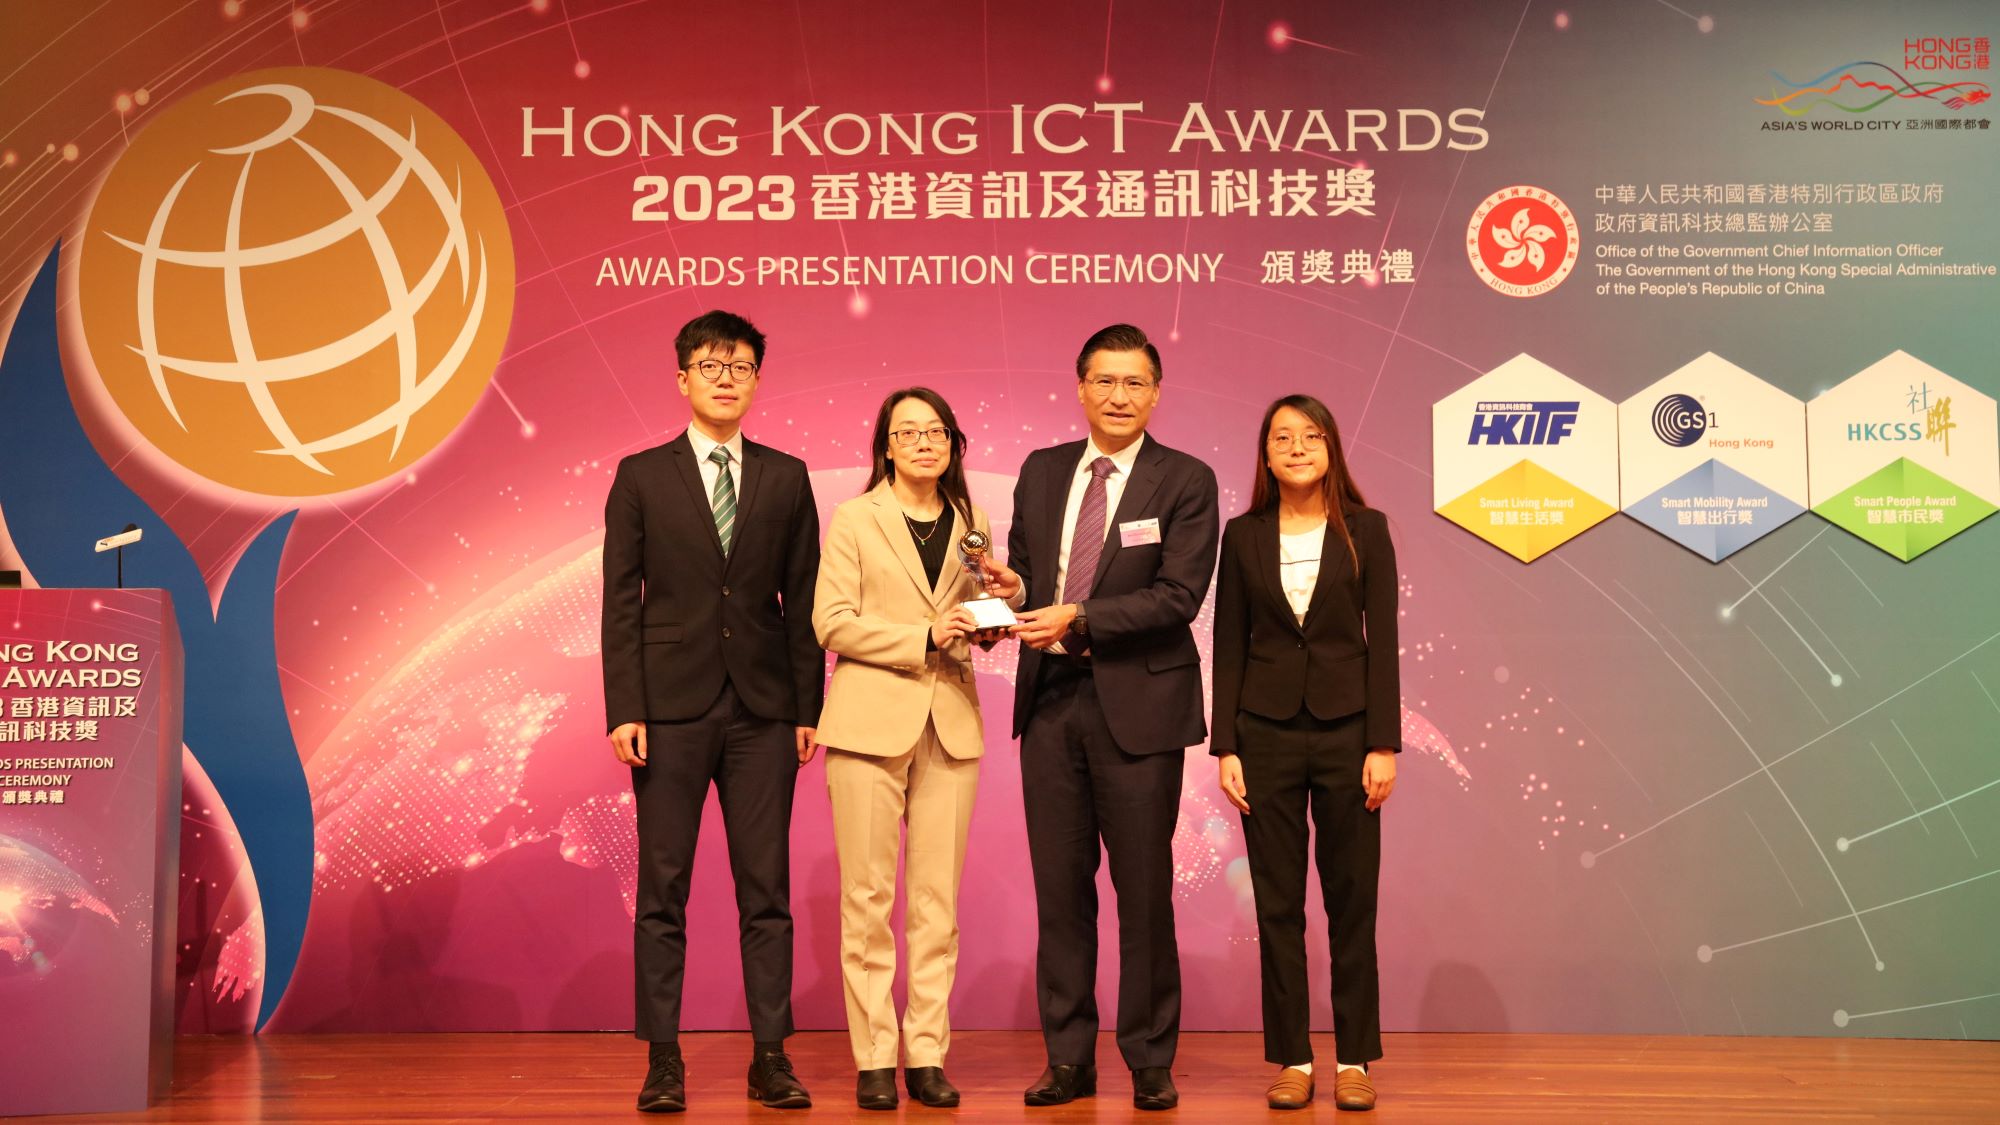 Hong Kong Observatory awarded in Hong Kong ICT Awards 2023